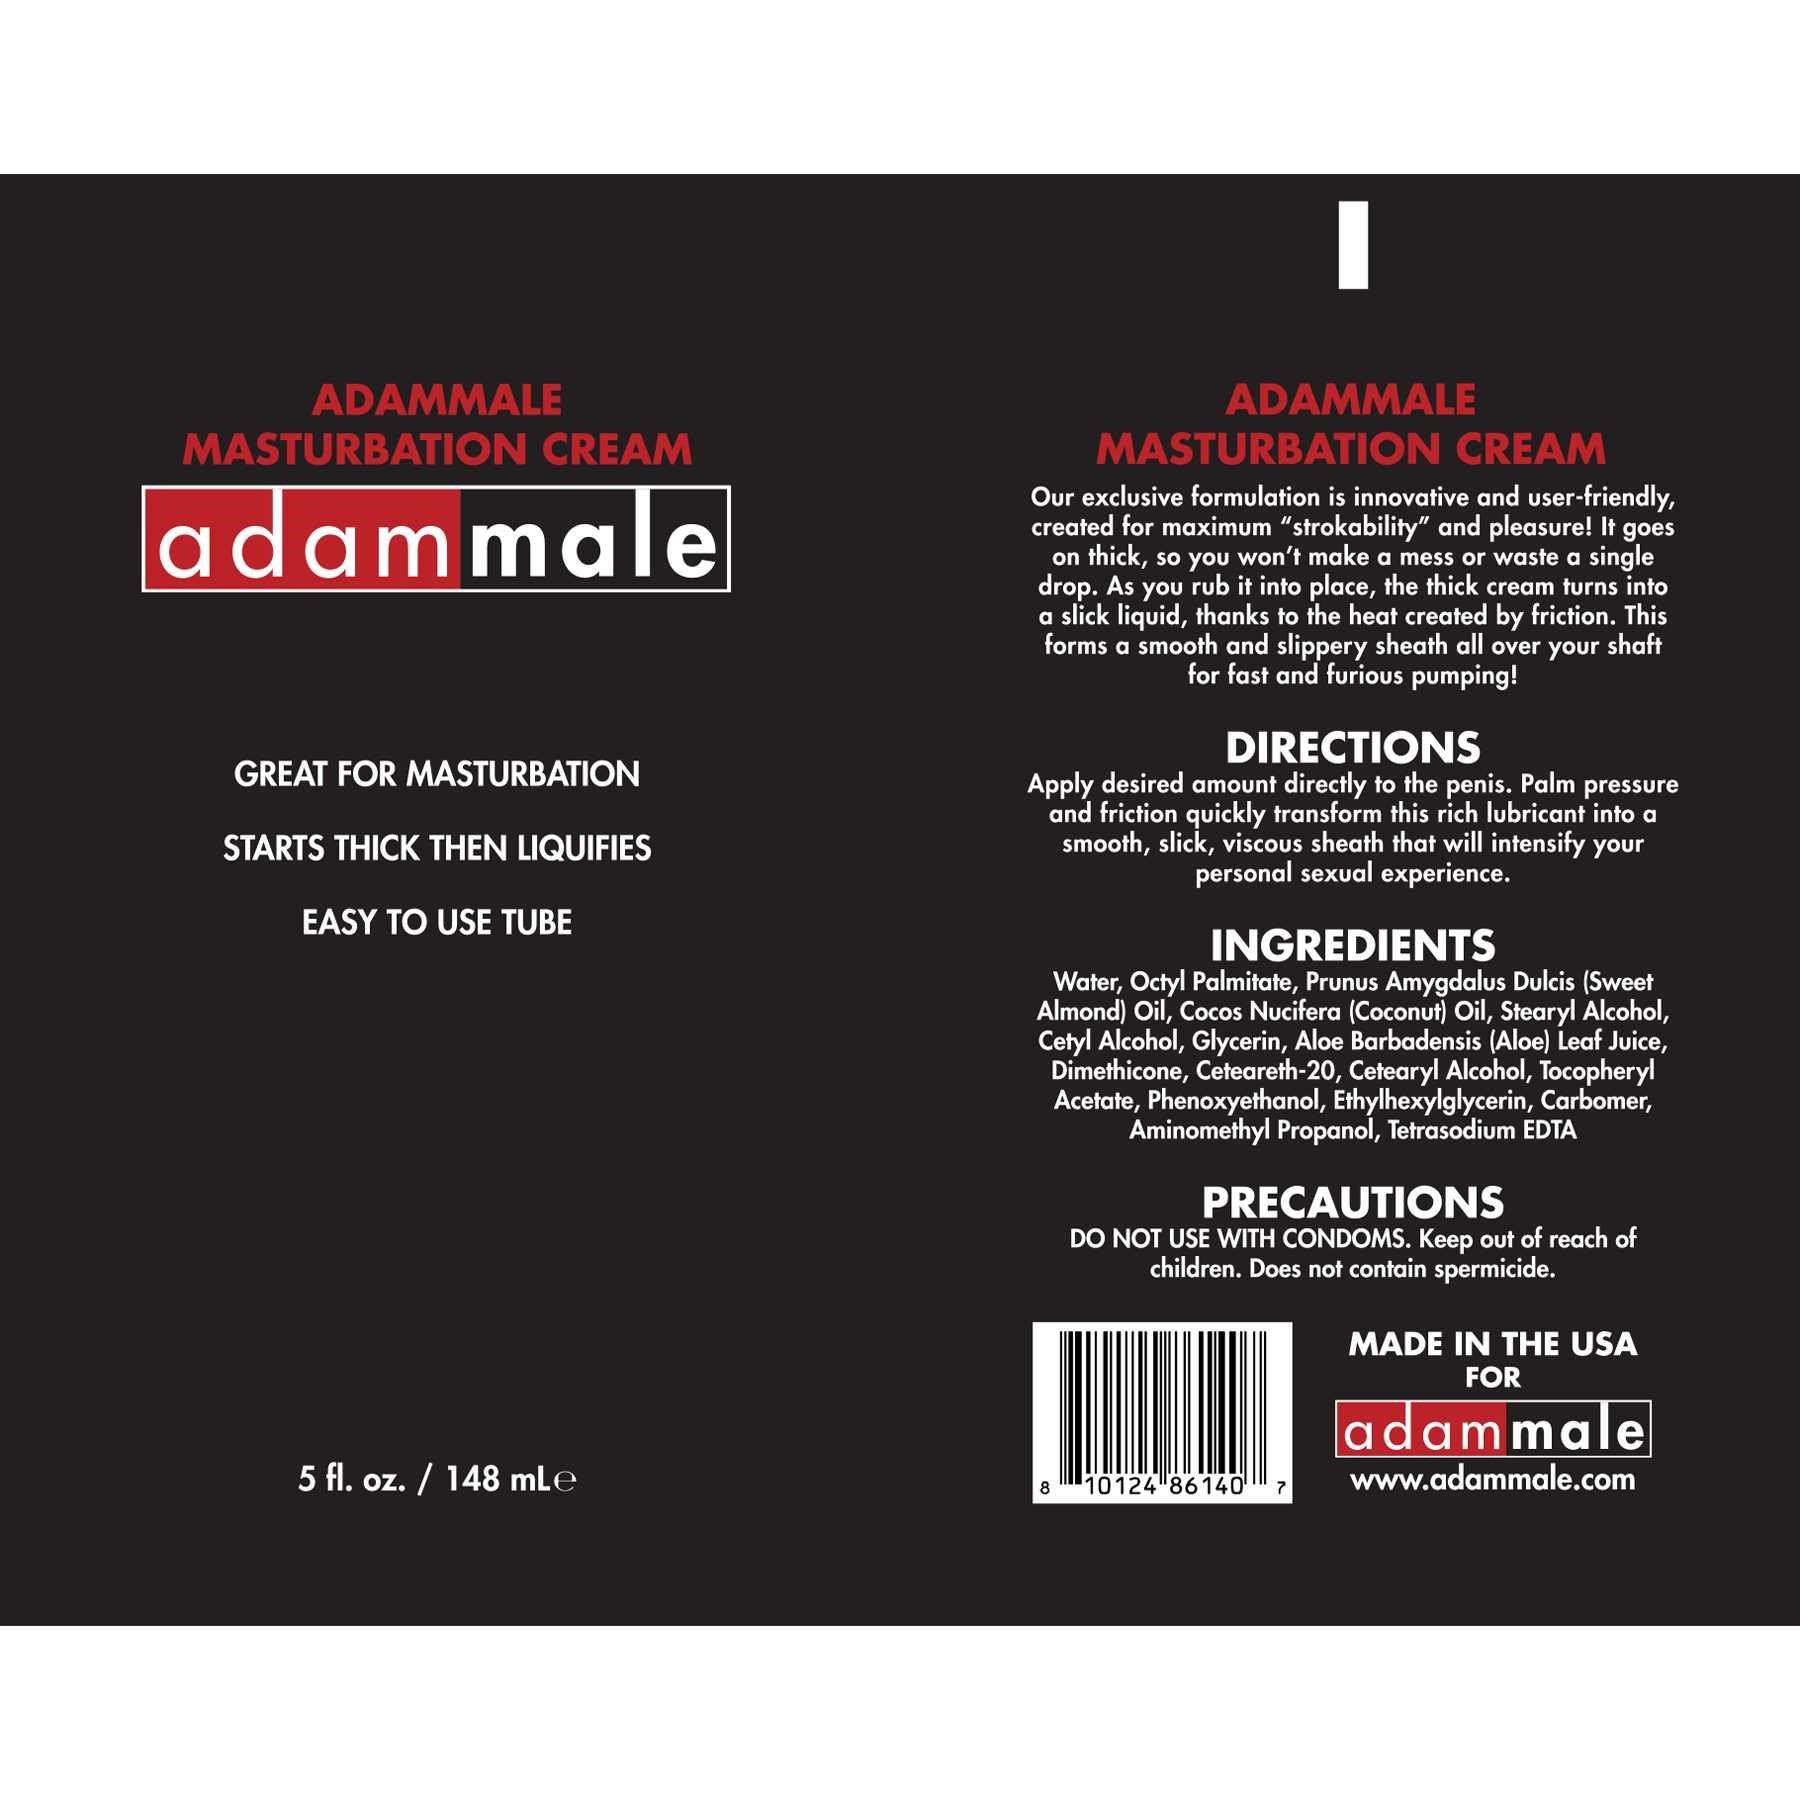 AdamMale Masturbation Cream